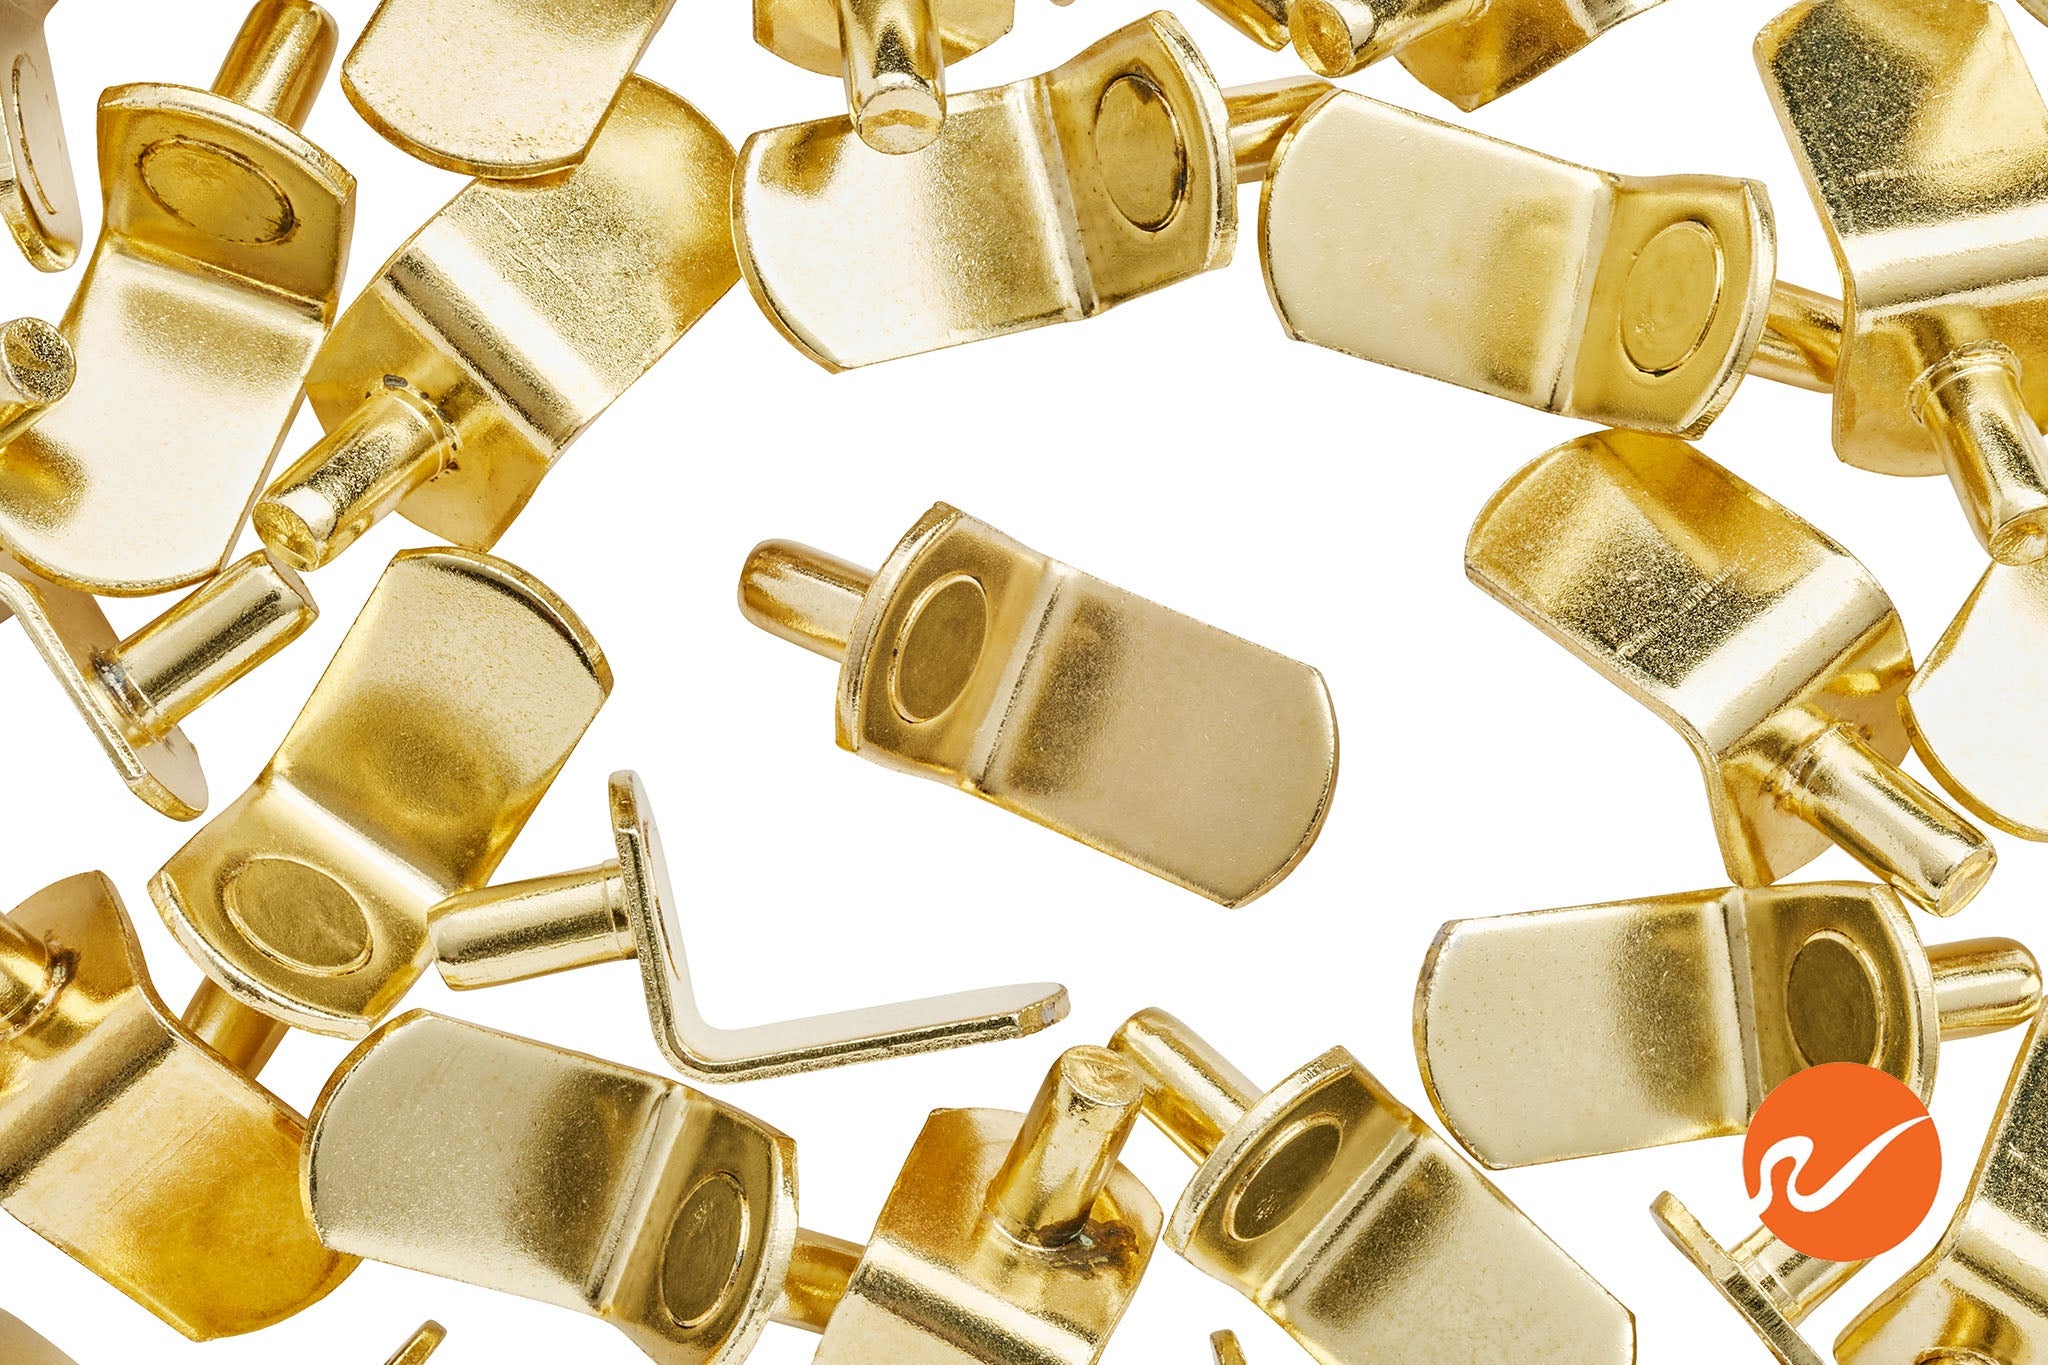 5mm Brass "L" Shelf Pins - WidgetCo